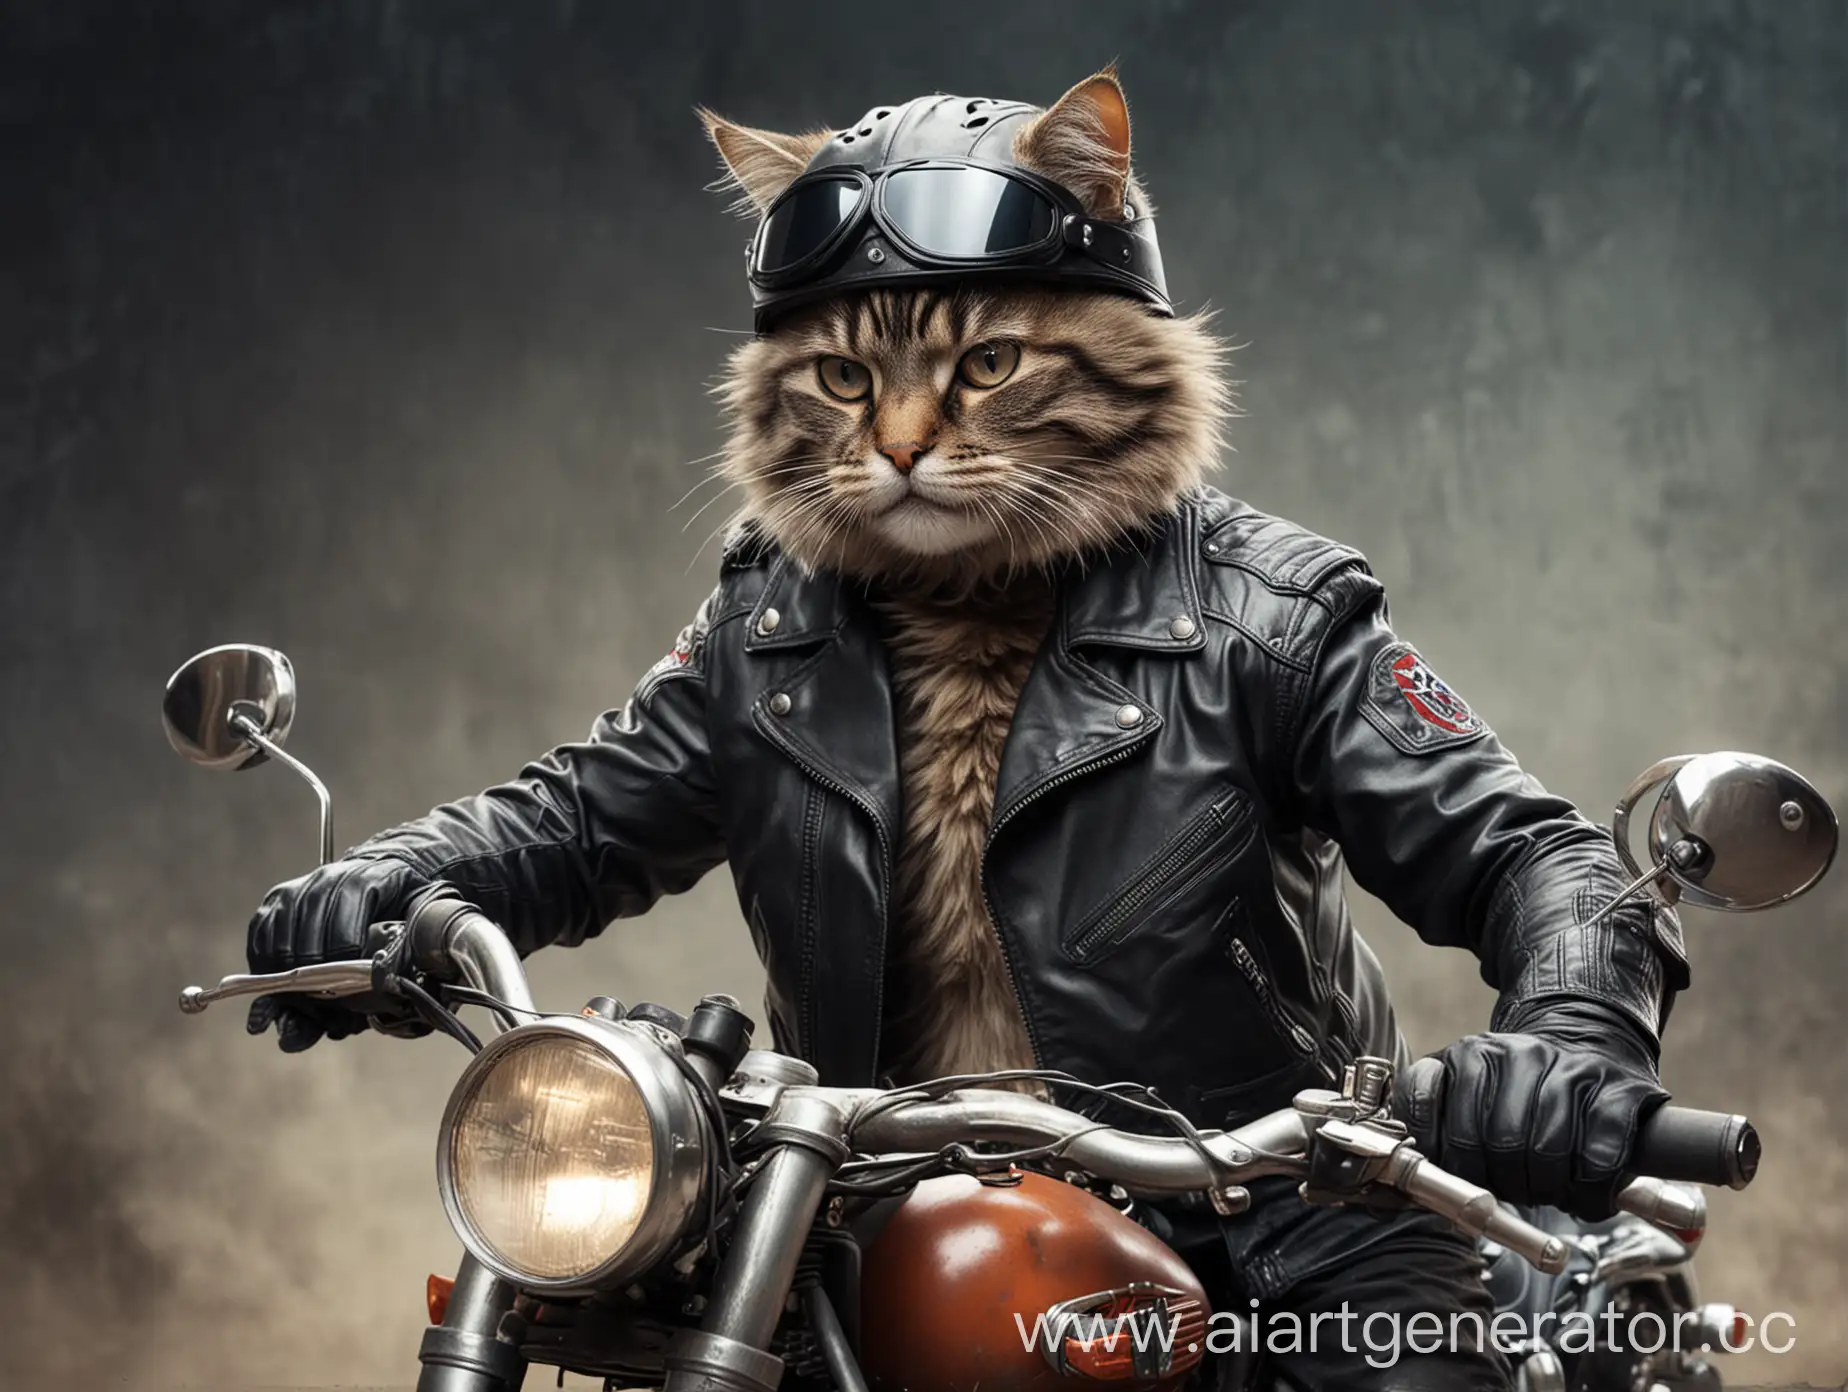 кот - байкер брутальный в кожаной куртке и в шлеме на мотоцикле едет